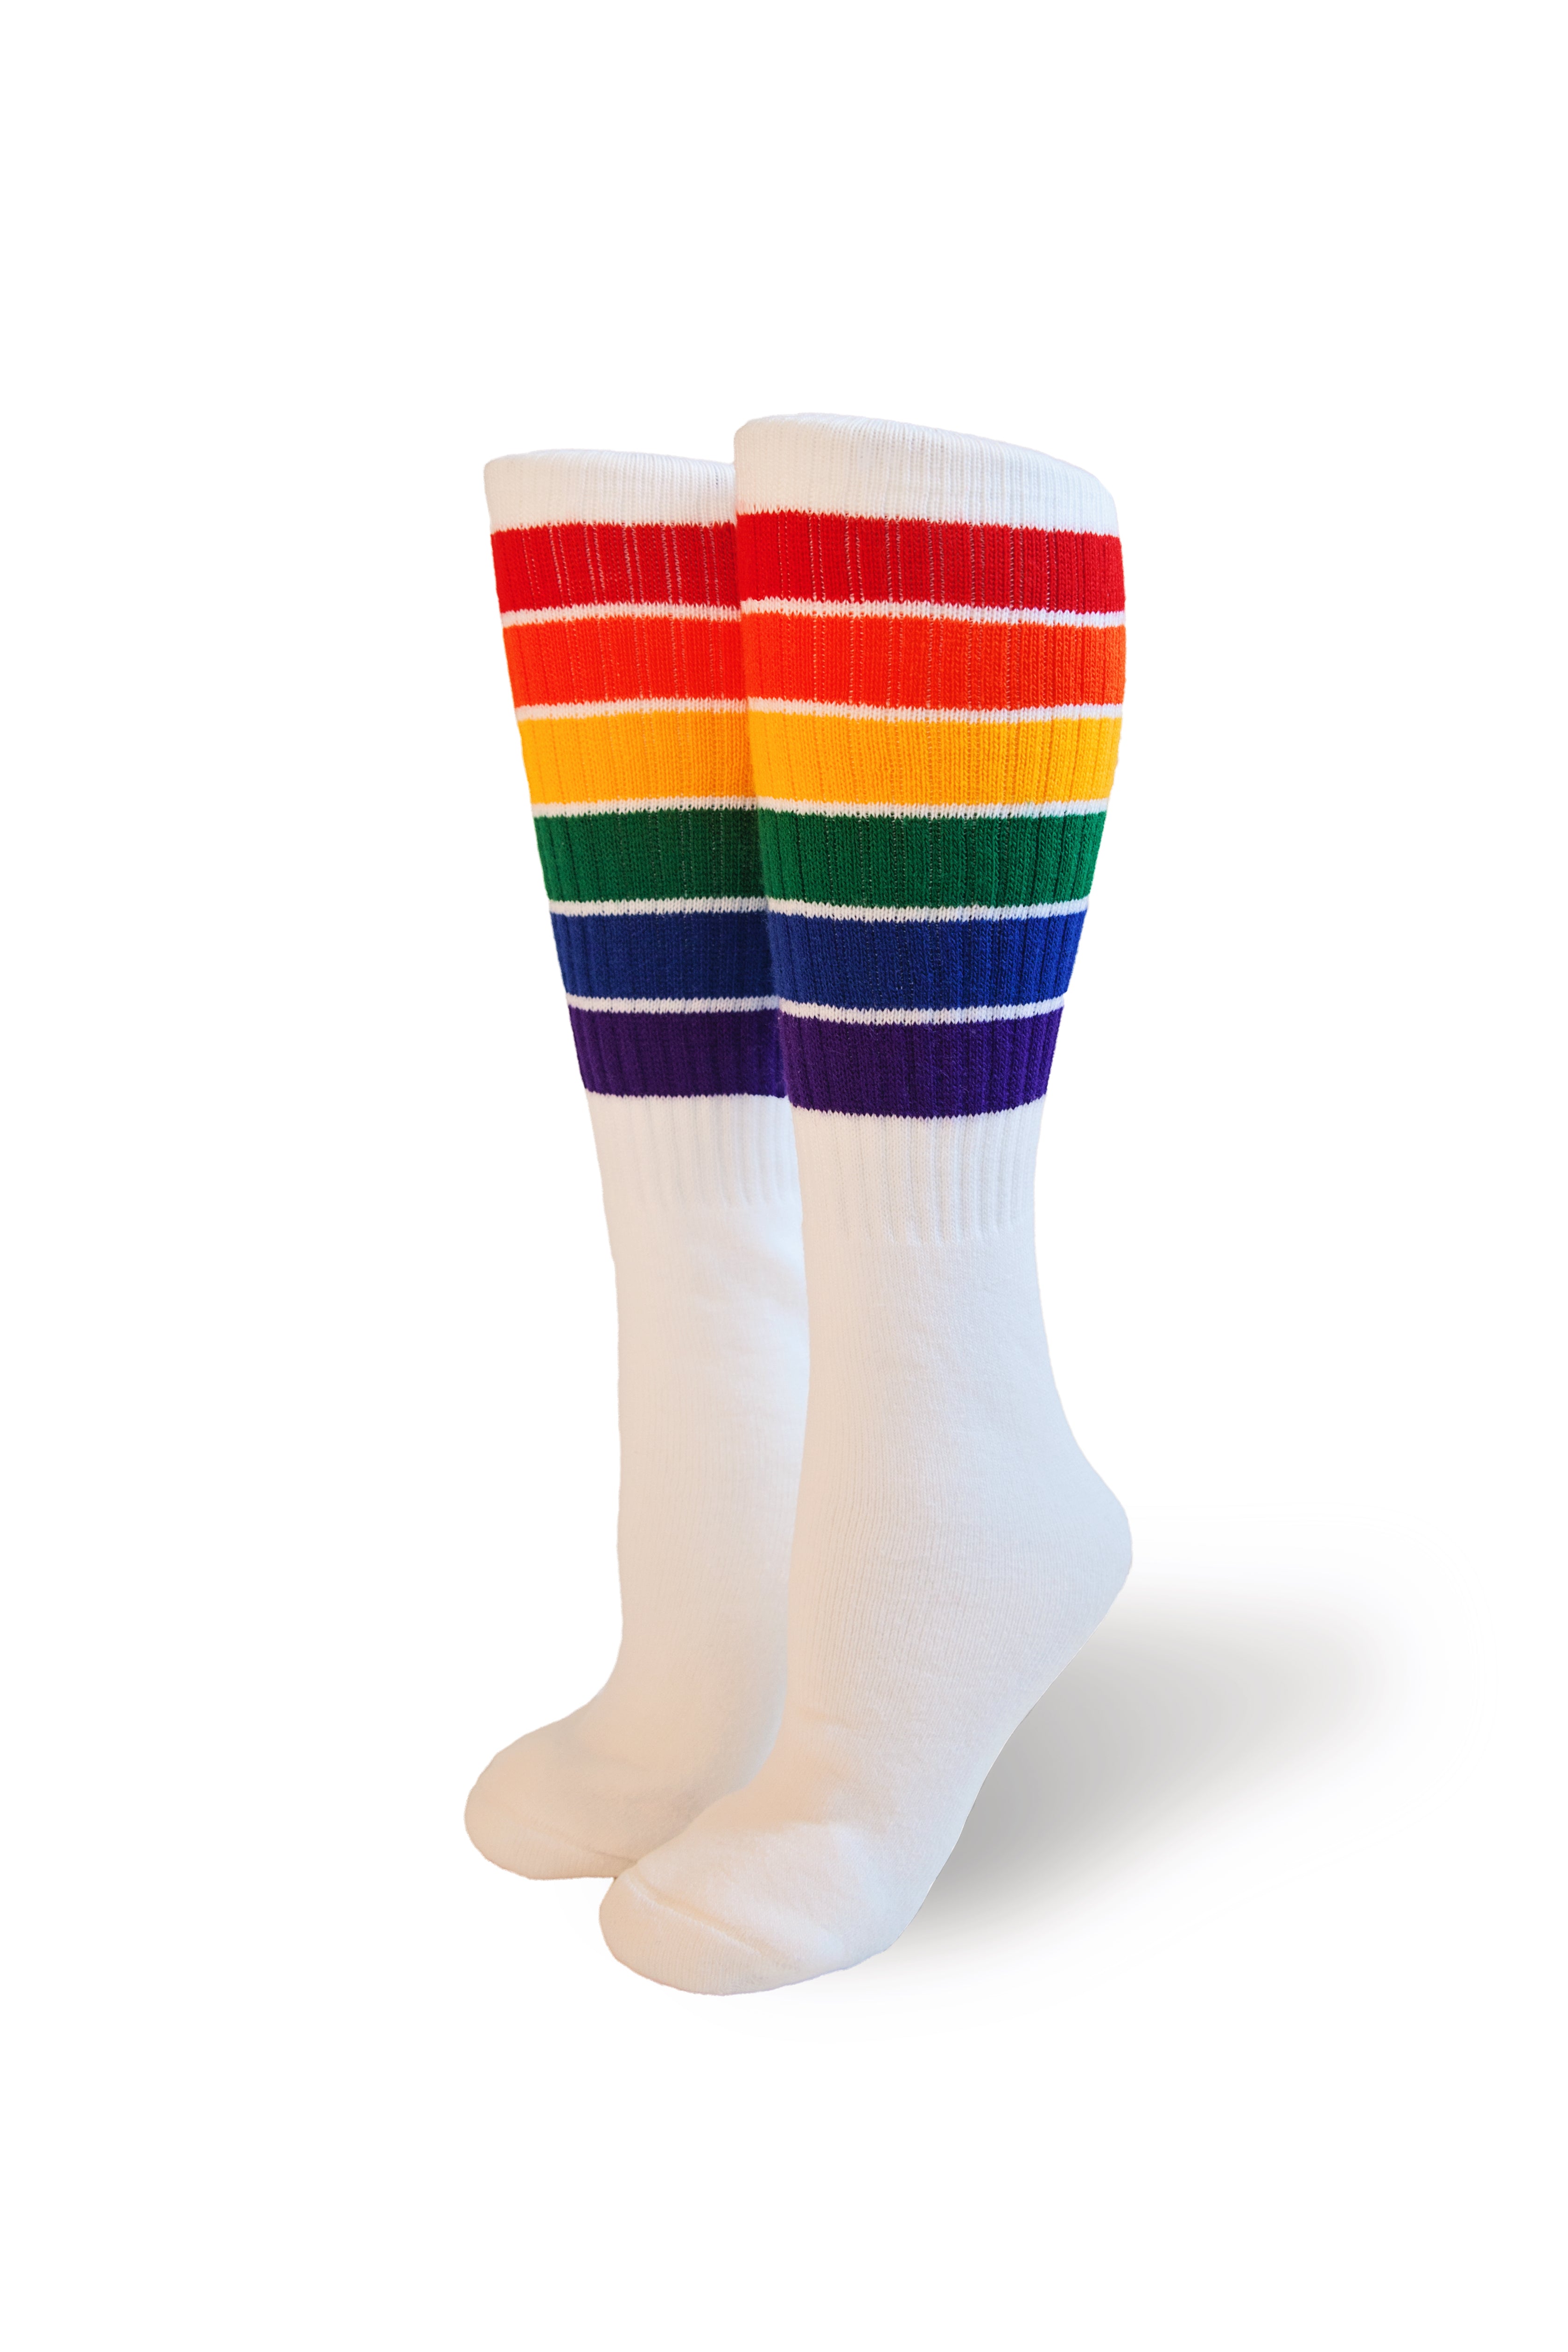 Pride Socks 22in white tubes - Yolo